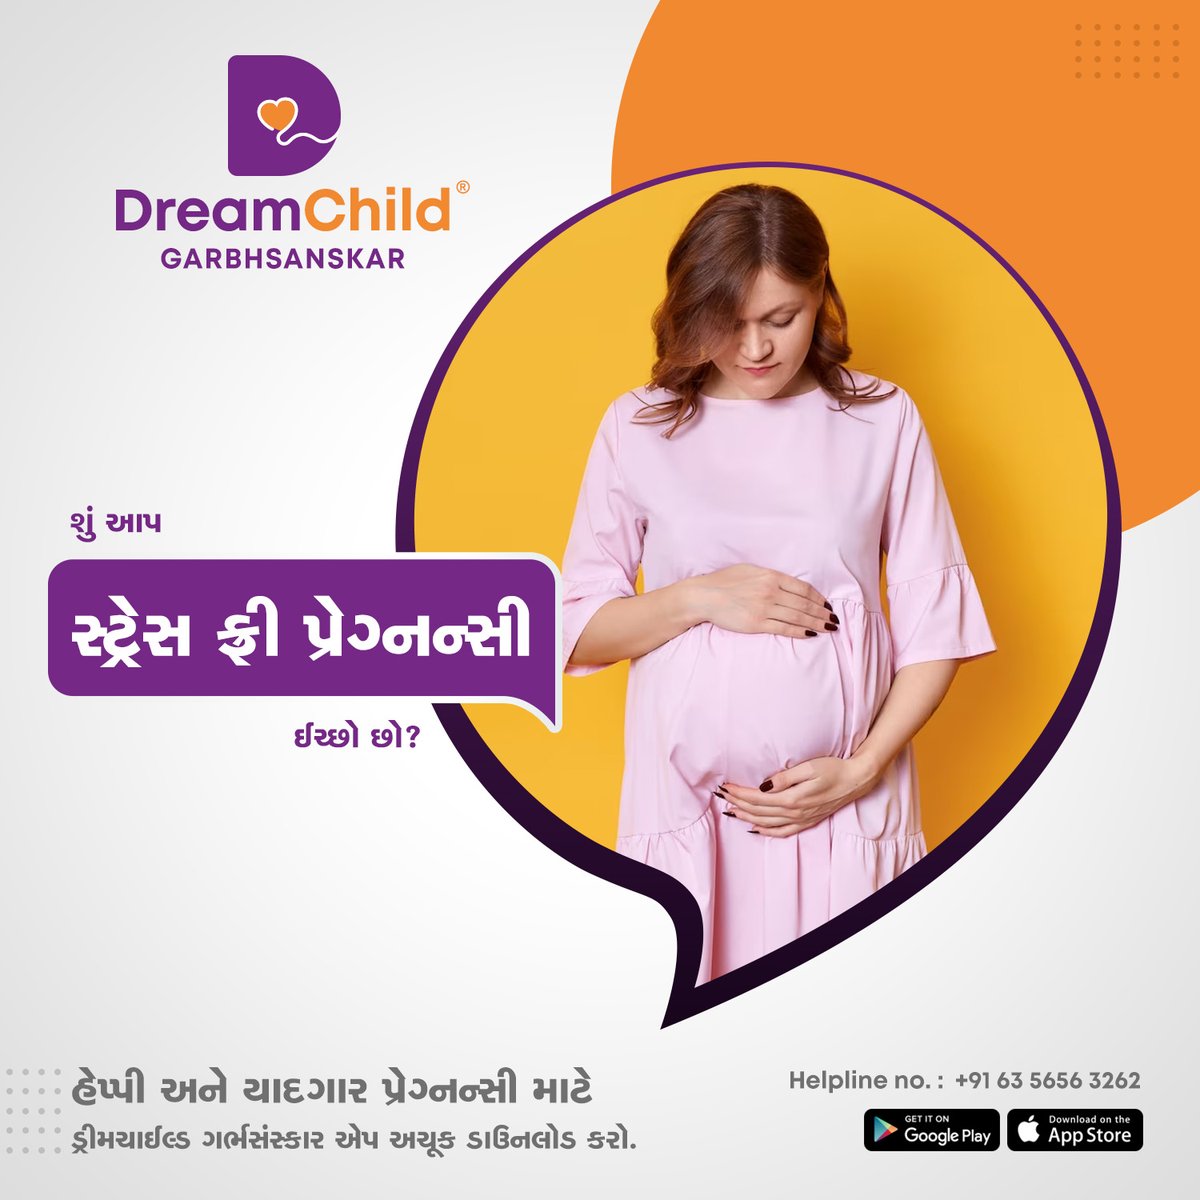 પ્રેગ્નન્સી પ્લાનીંગ કરો છો ? આપે કઈ-કઈ બાબતો ધ્યાનમાં લેવી જોઈએ ? તેની દરેક માહિતી આપને આ એપ્લીકેશનમાં પ્રાપ્ત થશે !! આજે જ એપ ડાઉનલોડ કરો. Download App: 7 Days Free Demo Link: - bit.ly/49J2bz #pregnancyapp #dreamchild #bestpregnancyapp #pregnancytips #garbhsanskar